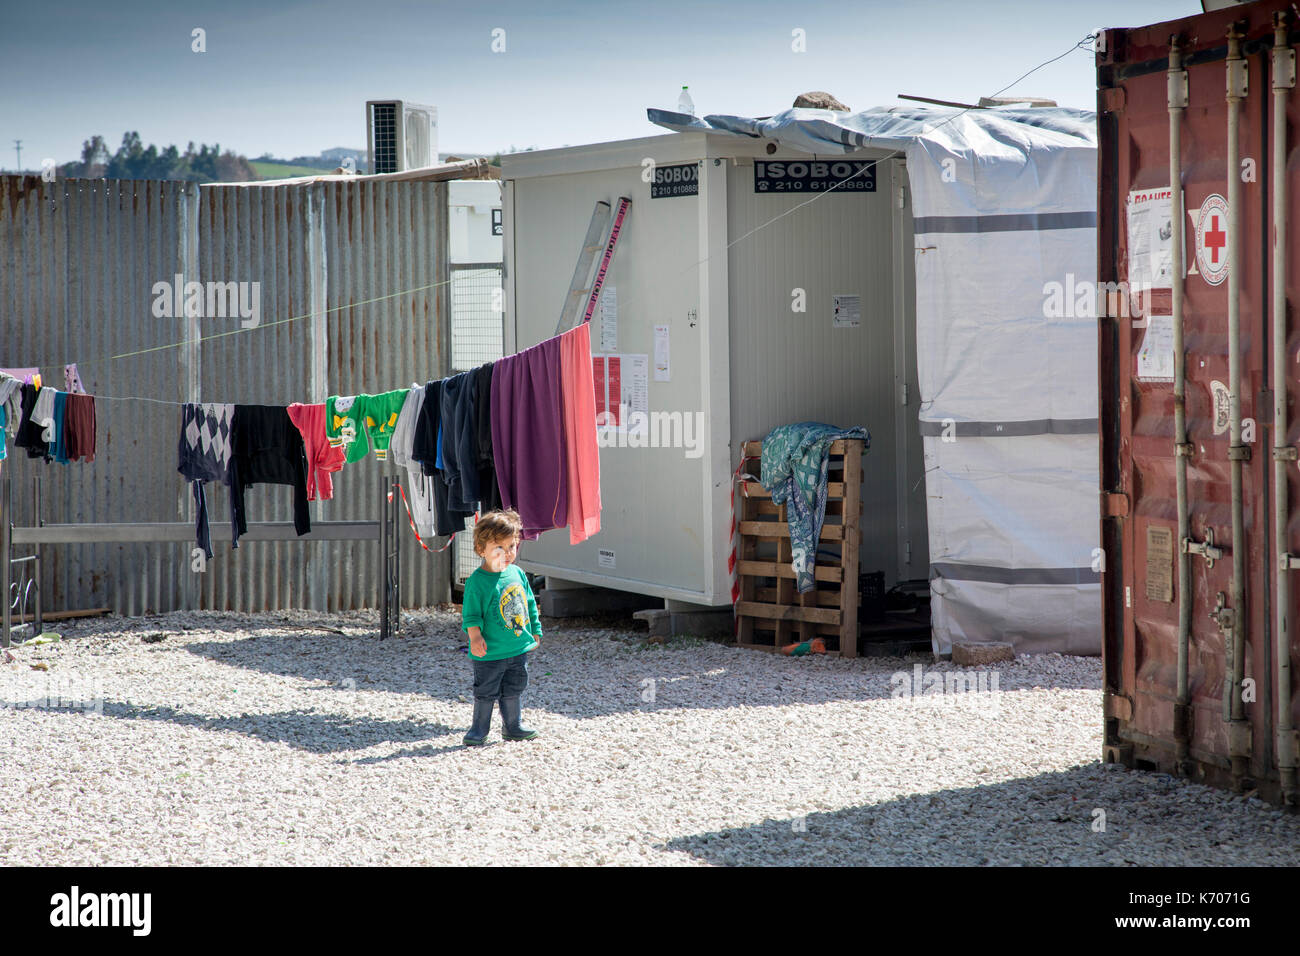 Auf dem Kies zwischen vorgefertigten Einheiten, in denen Flüchtlinge aus Syrien untergebracht sind, untersucht ein einjähriges Kind das Flüchtlingslager Ritsona. Vordergrund – ein Container des Roten Kreuzes. Stockfoto